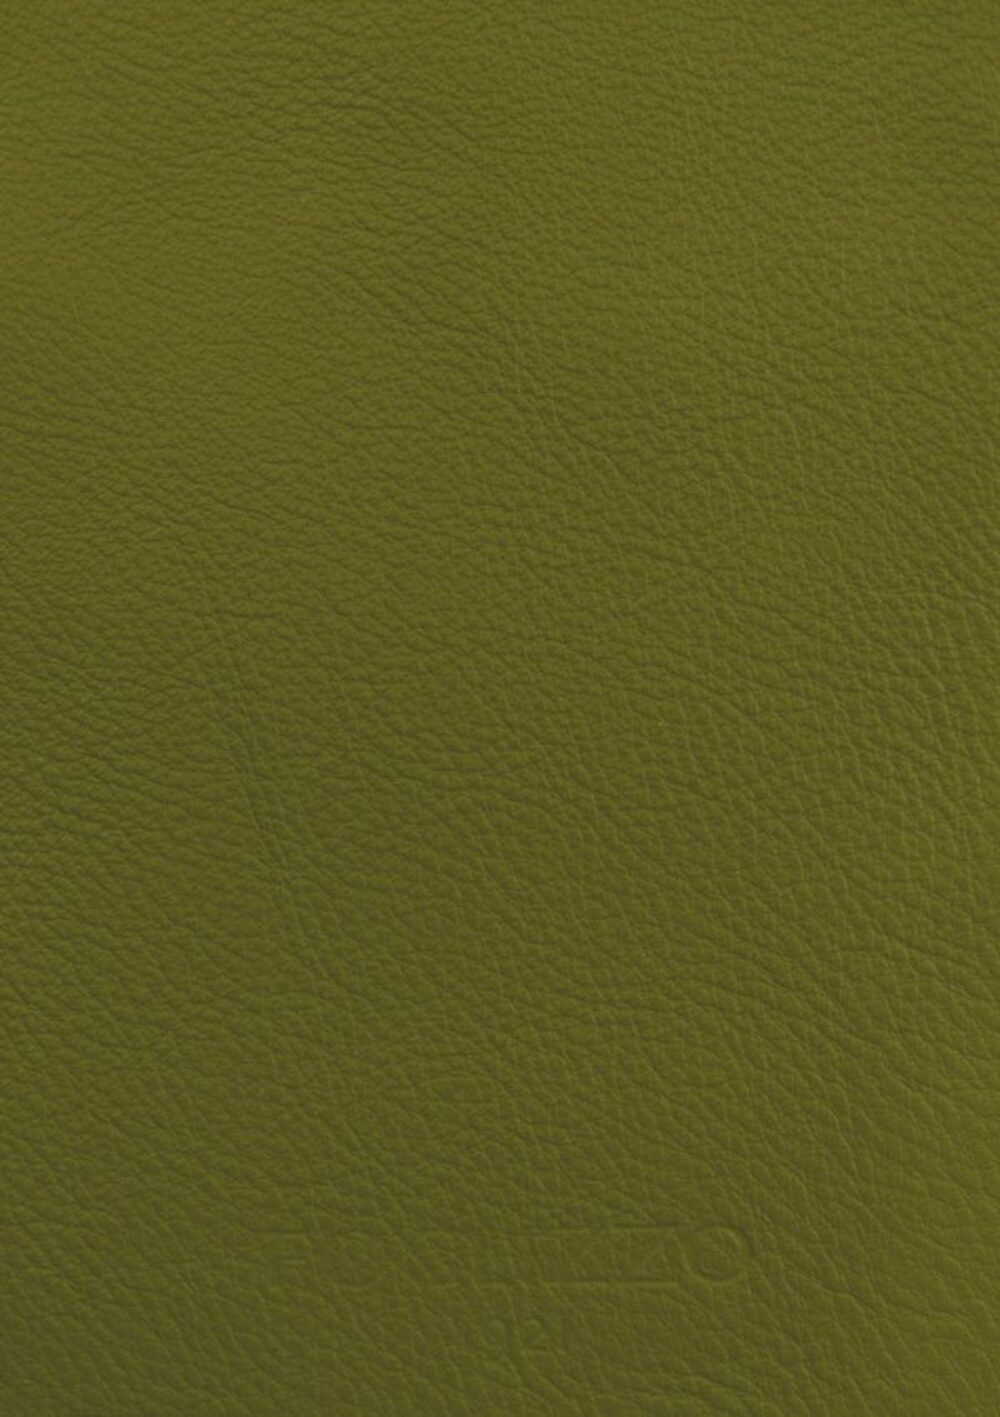 Diseño de lujo y alfombras de alta gama hechas a medida • Army Green Jade